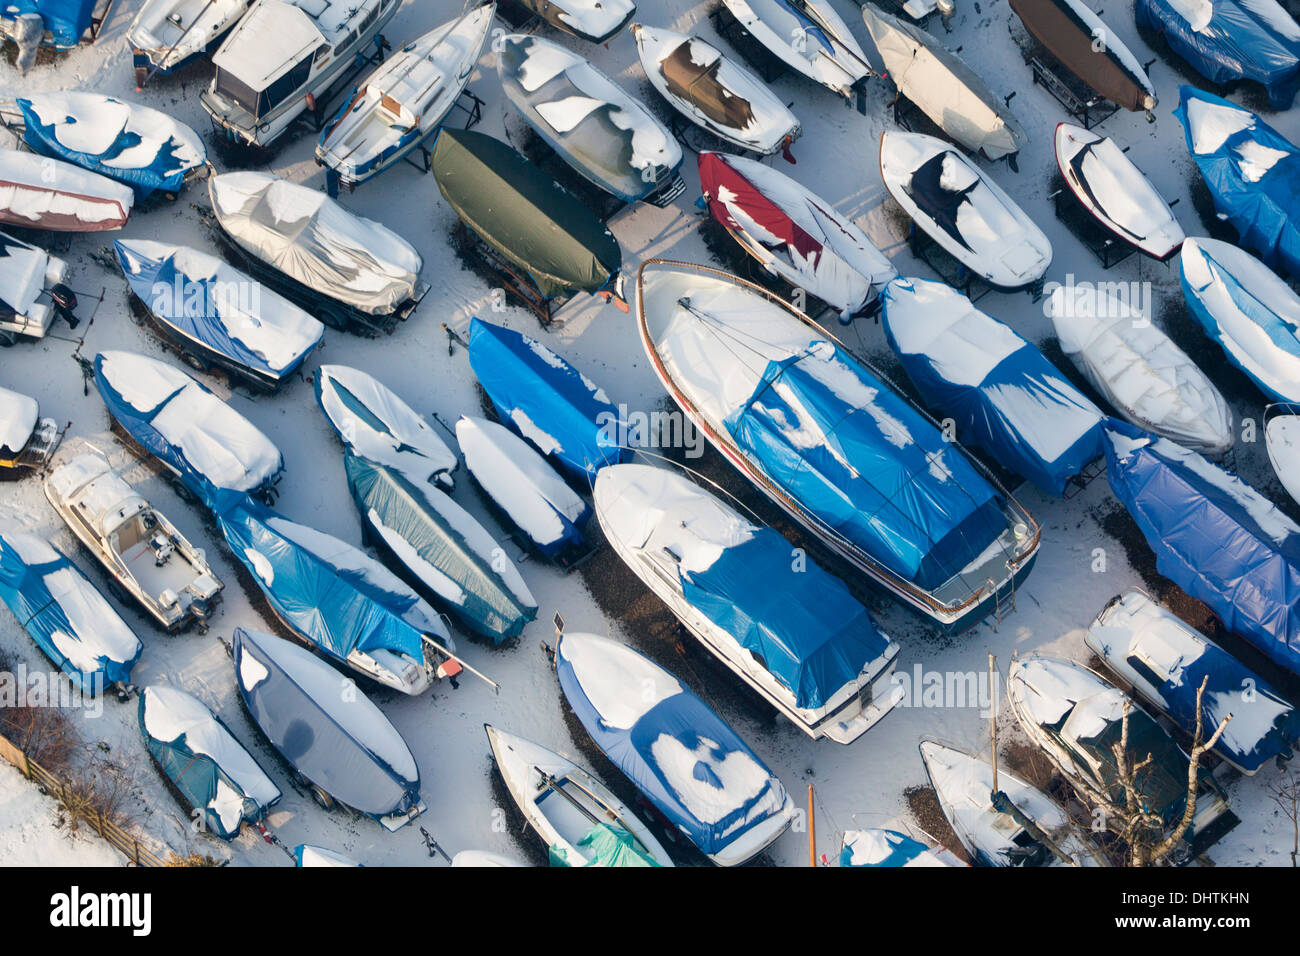 Pays-bas, Loenen aan de Vecht, petits yachts au camping. L'hiver. Aerial Banque D'Images